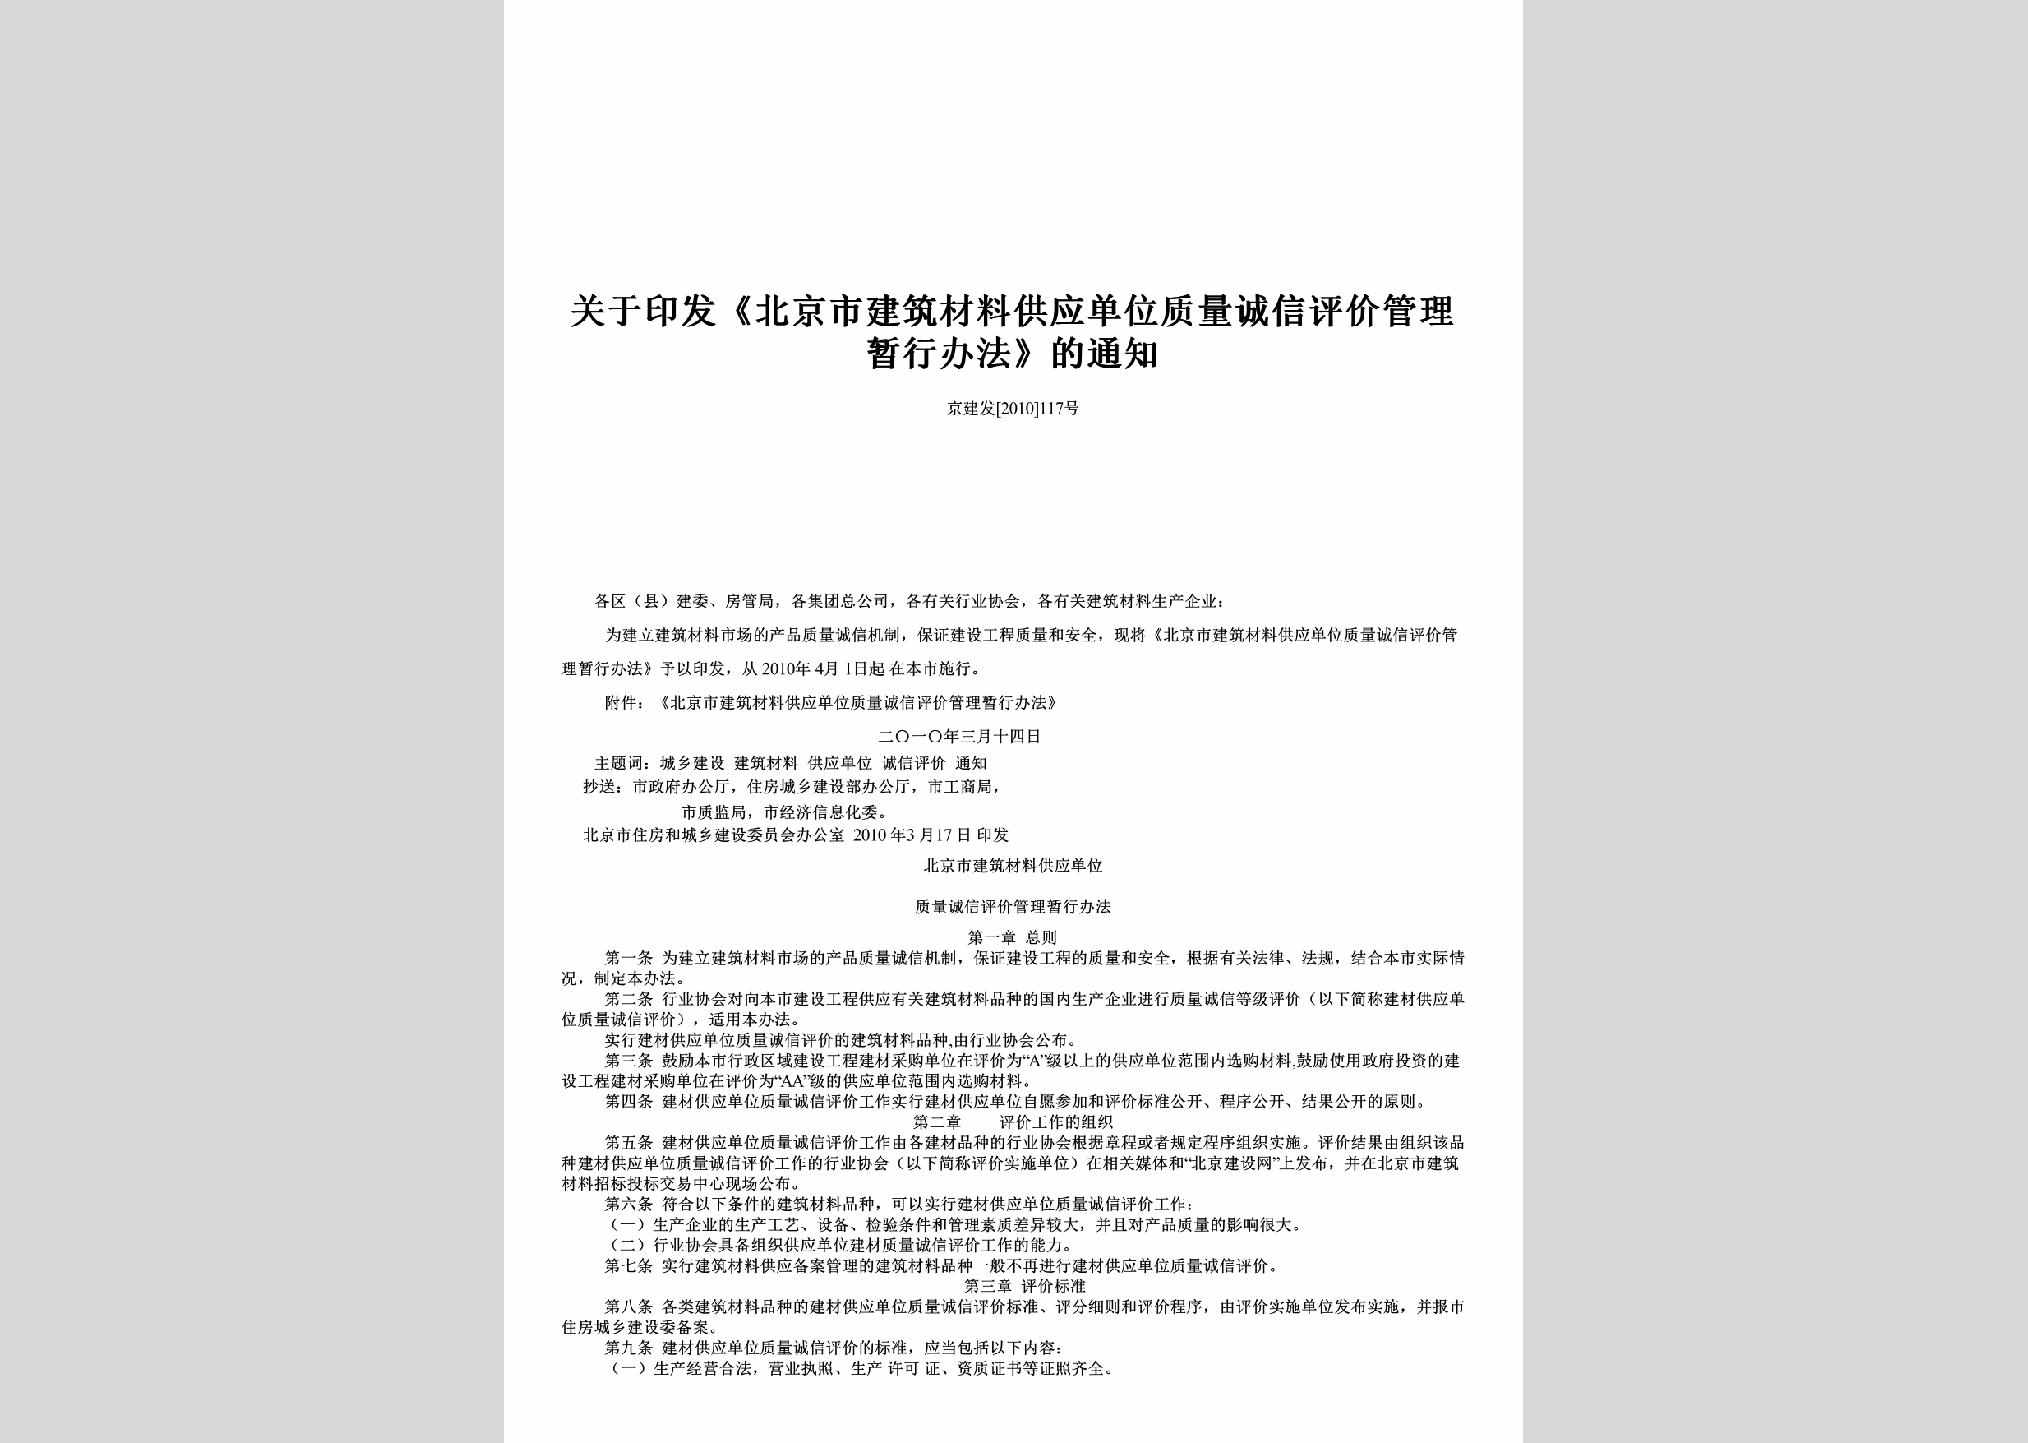 京建发[2010]117号：关于印发《北京市建筑材料供应单位质量诚信评价管理暂行办法》的通知